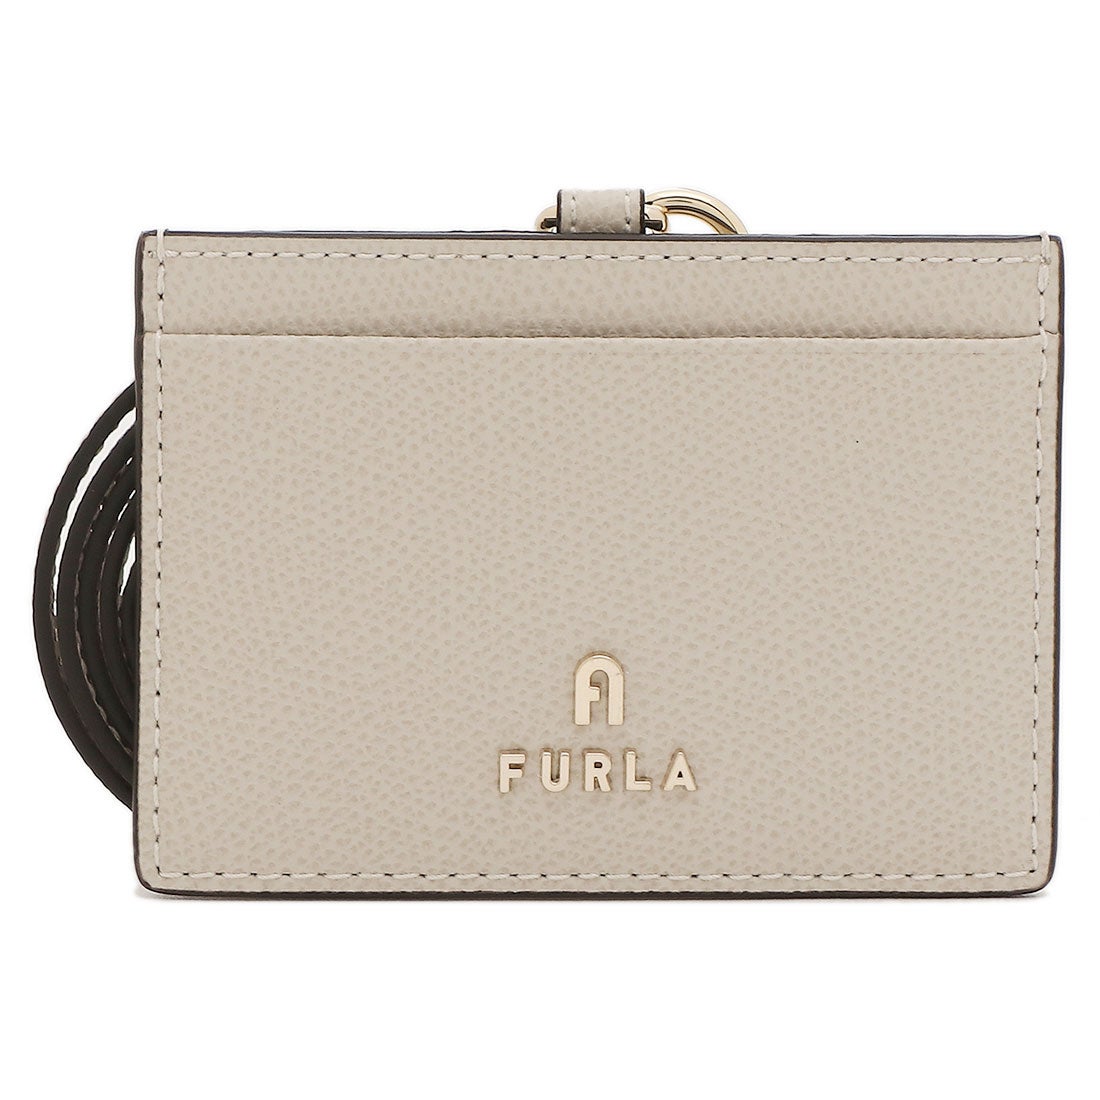 新品 フルラ FURLA カードケース カメリア S ZIPPED CARD CASE トーニ マシュマロ